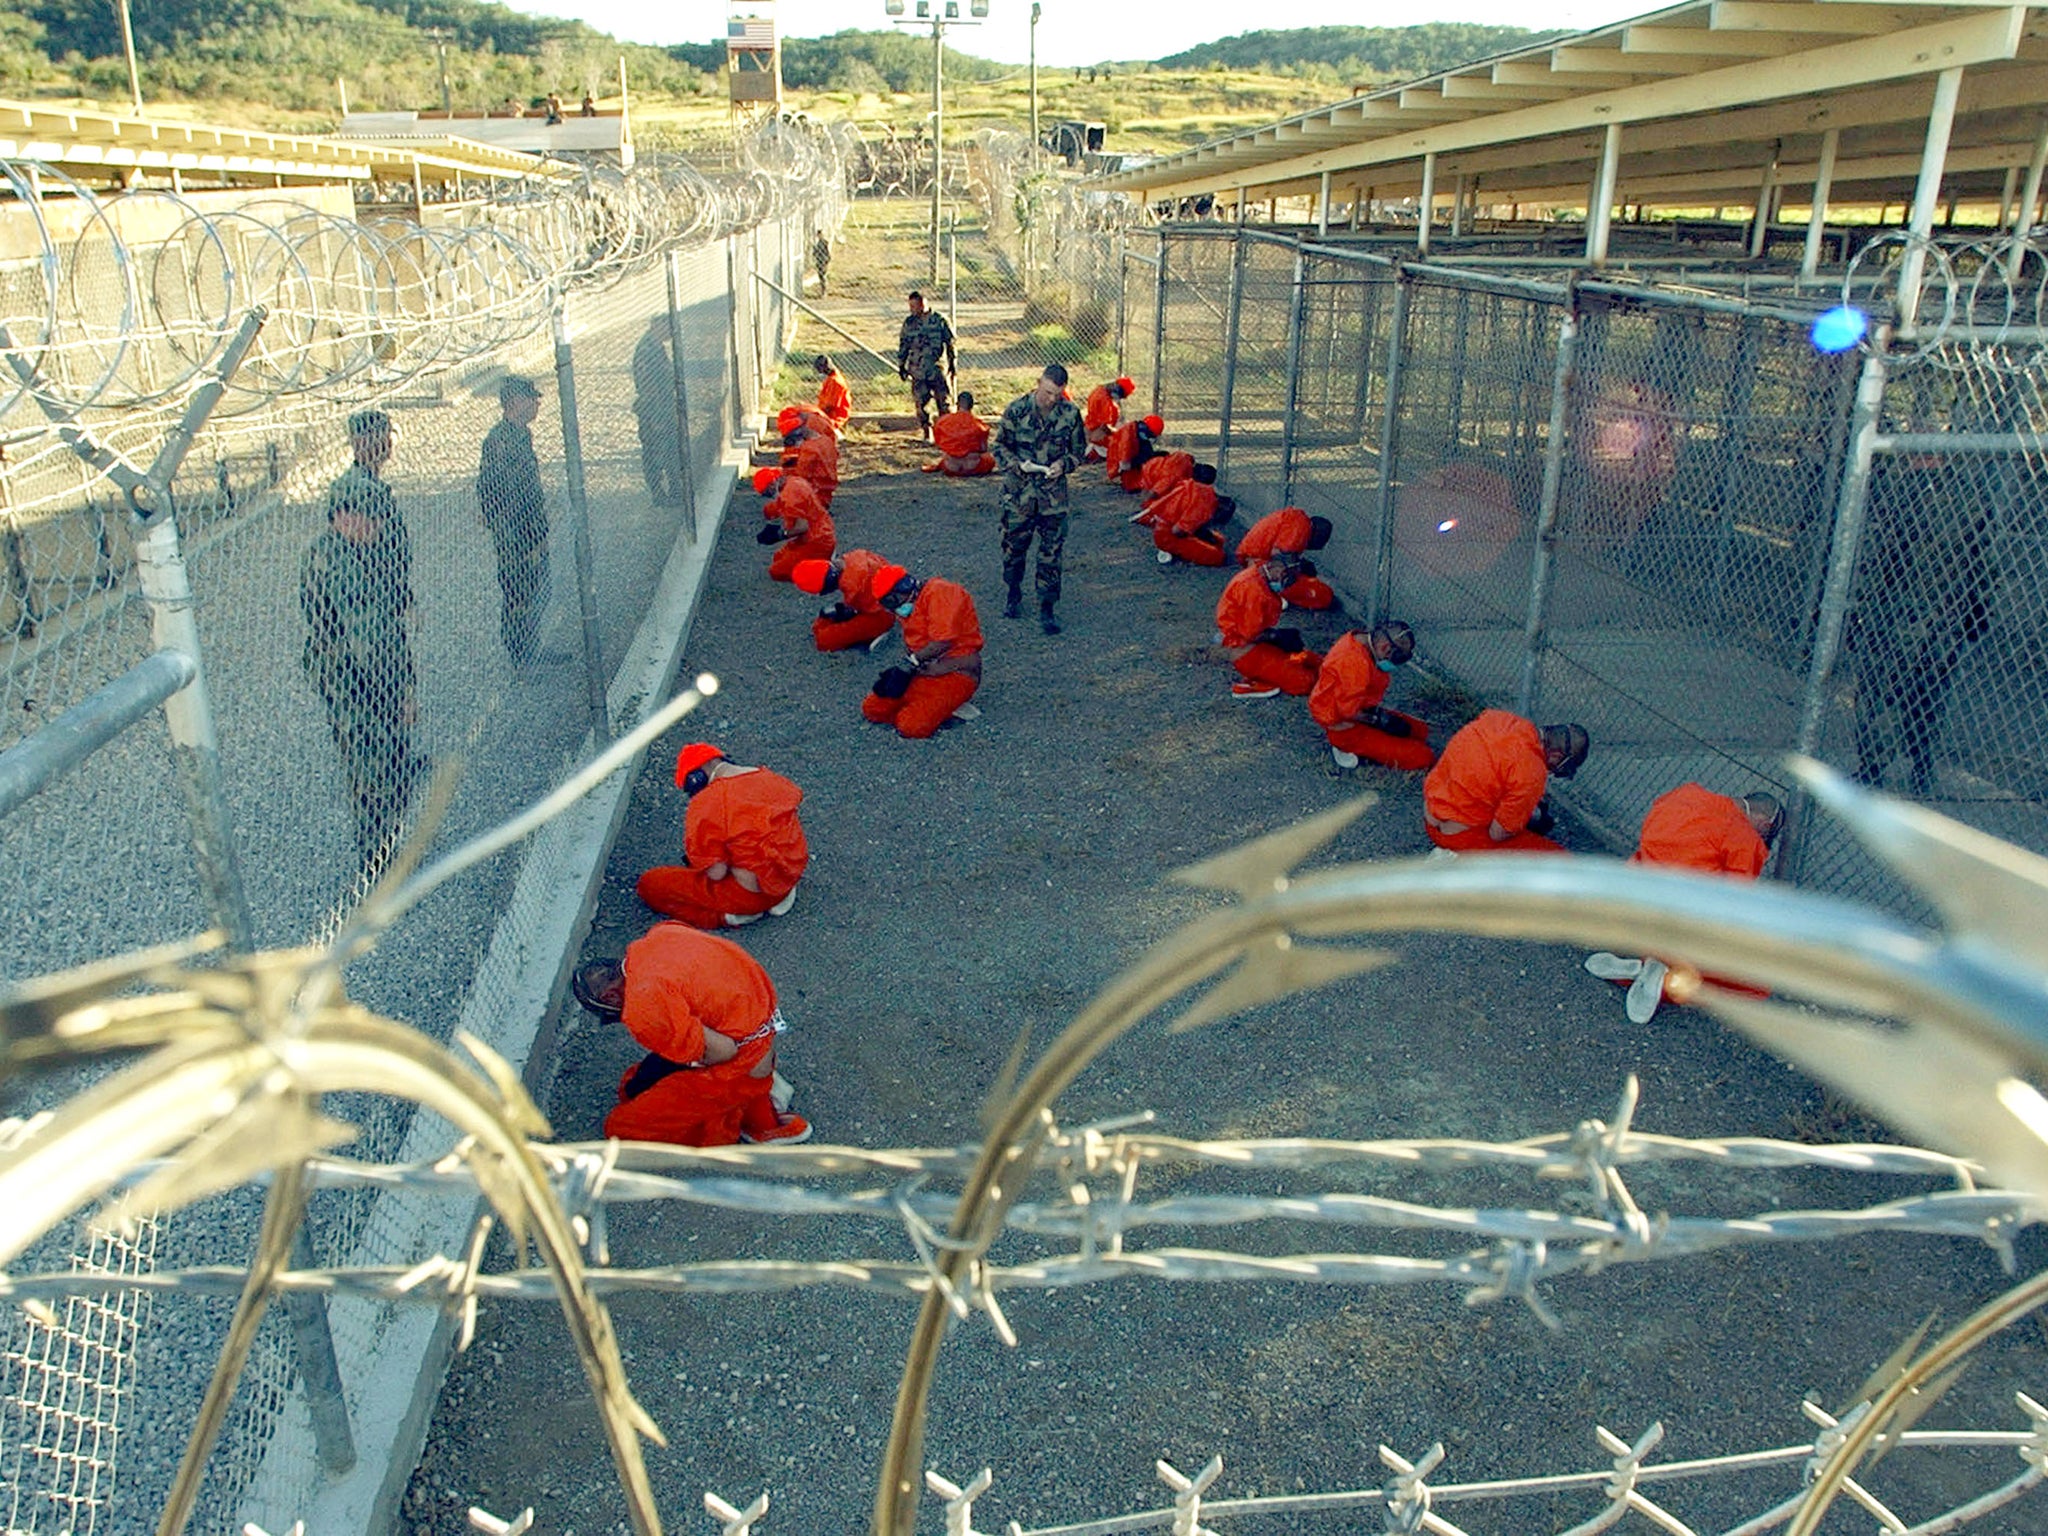 Taliban and al Qaeda detainees held at Guantanamo Bay in 2002